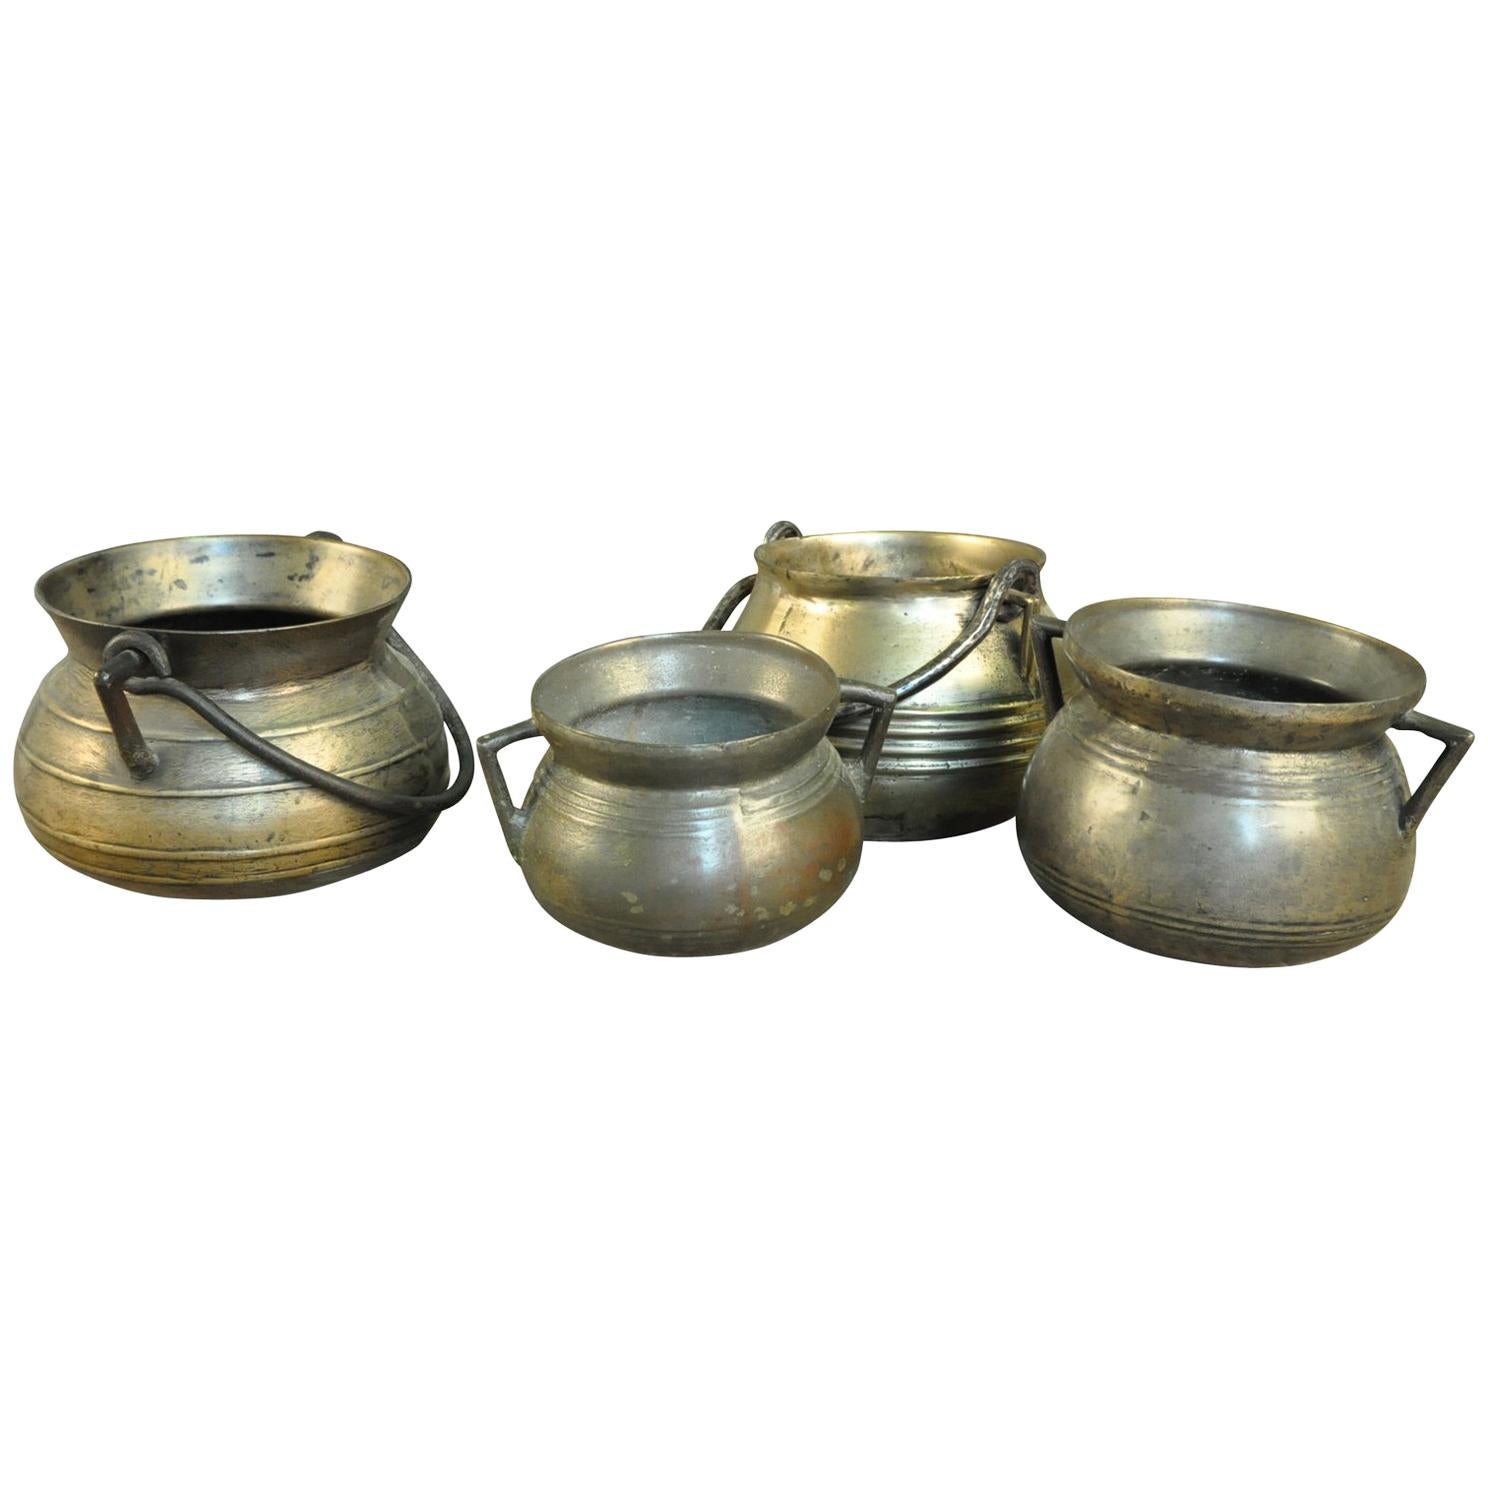 Kollektion von 4 Bronze Olas, Kochtöpfen